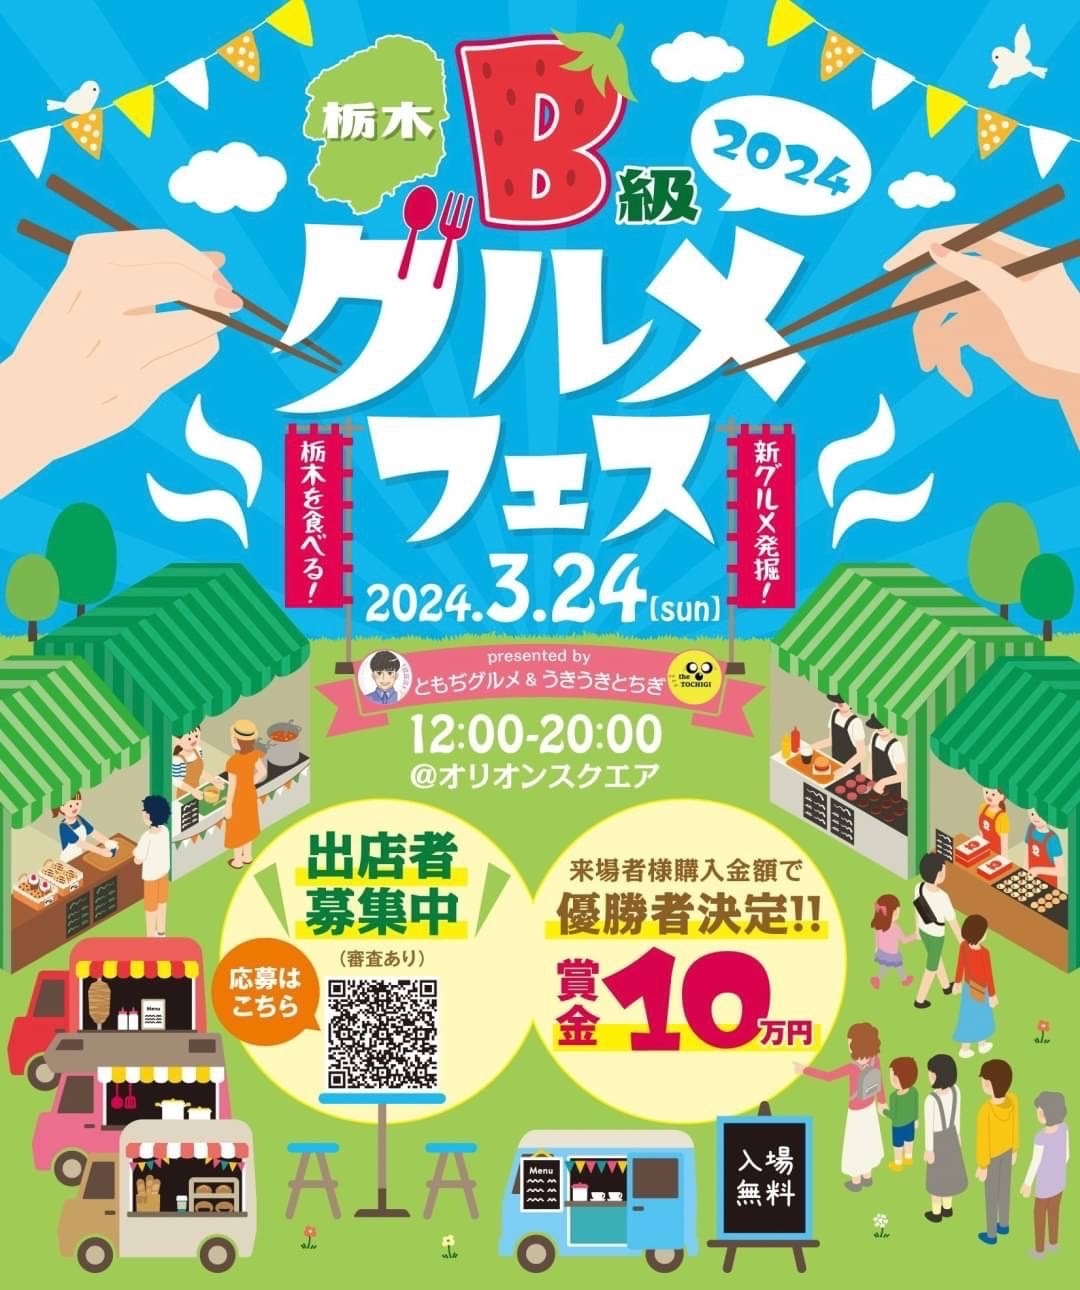 「栃木県B級グルメフェス」3月24日開催に向け
クラウドファンディングを開始！